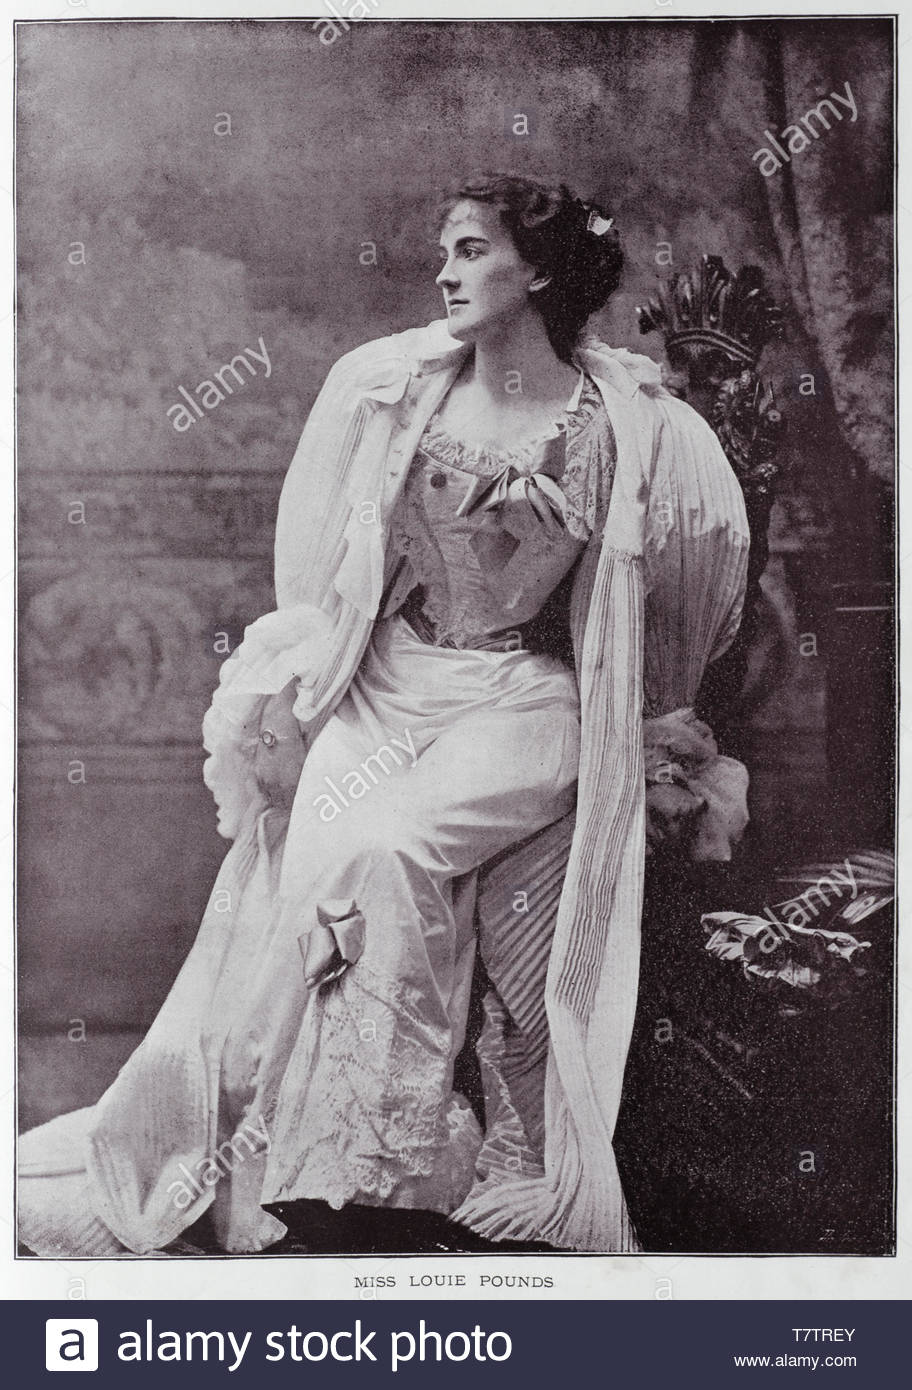 Louie Livres, 1872 - 1970, est une chanteuse et actrice, connue pour ses rôles dans les comédies musicales, photographie de 1890 Banque D'Images